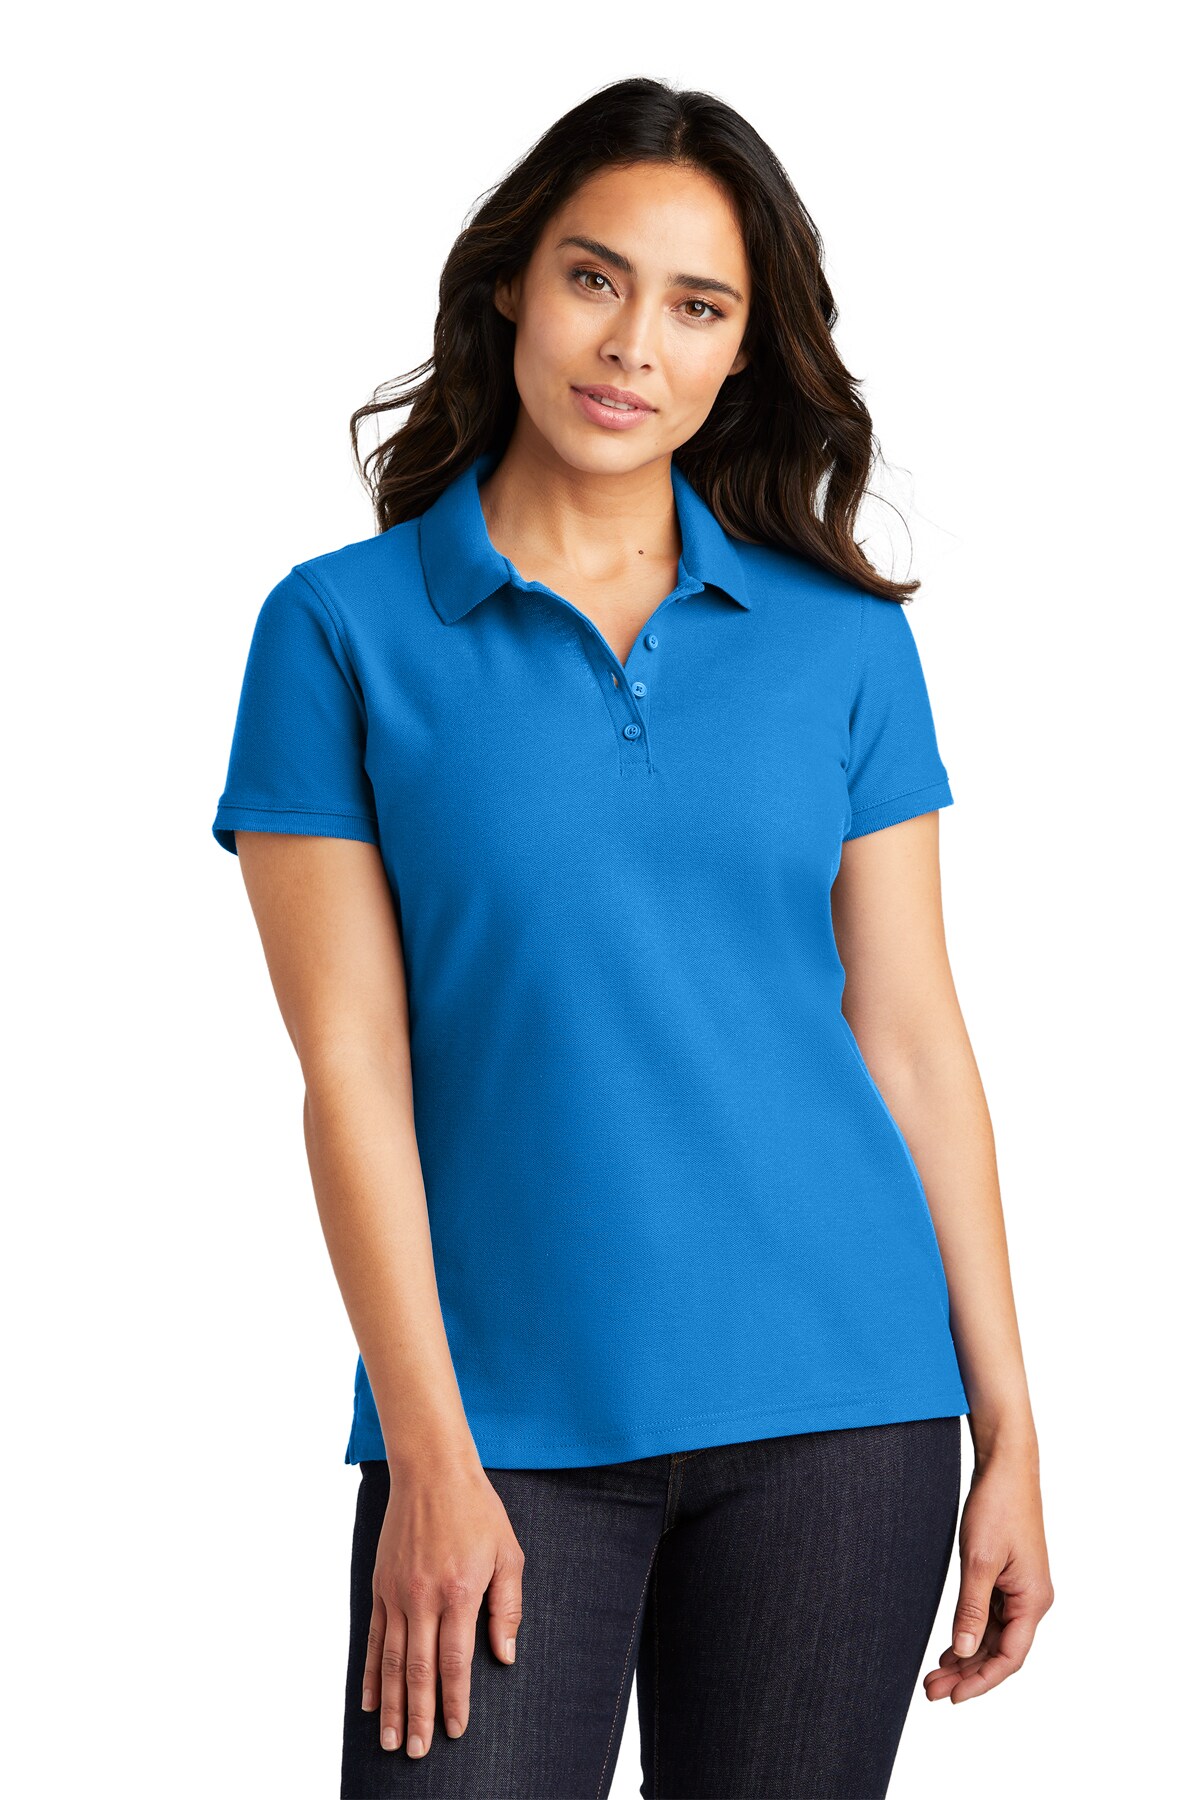 Best Ladies Core Classic Pique Polo T-shirt | 4.4-ounce, 60/40 cotton ...